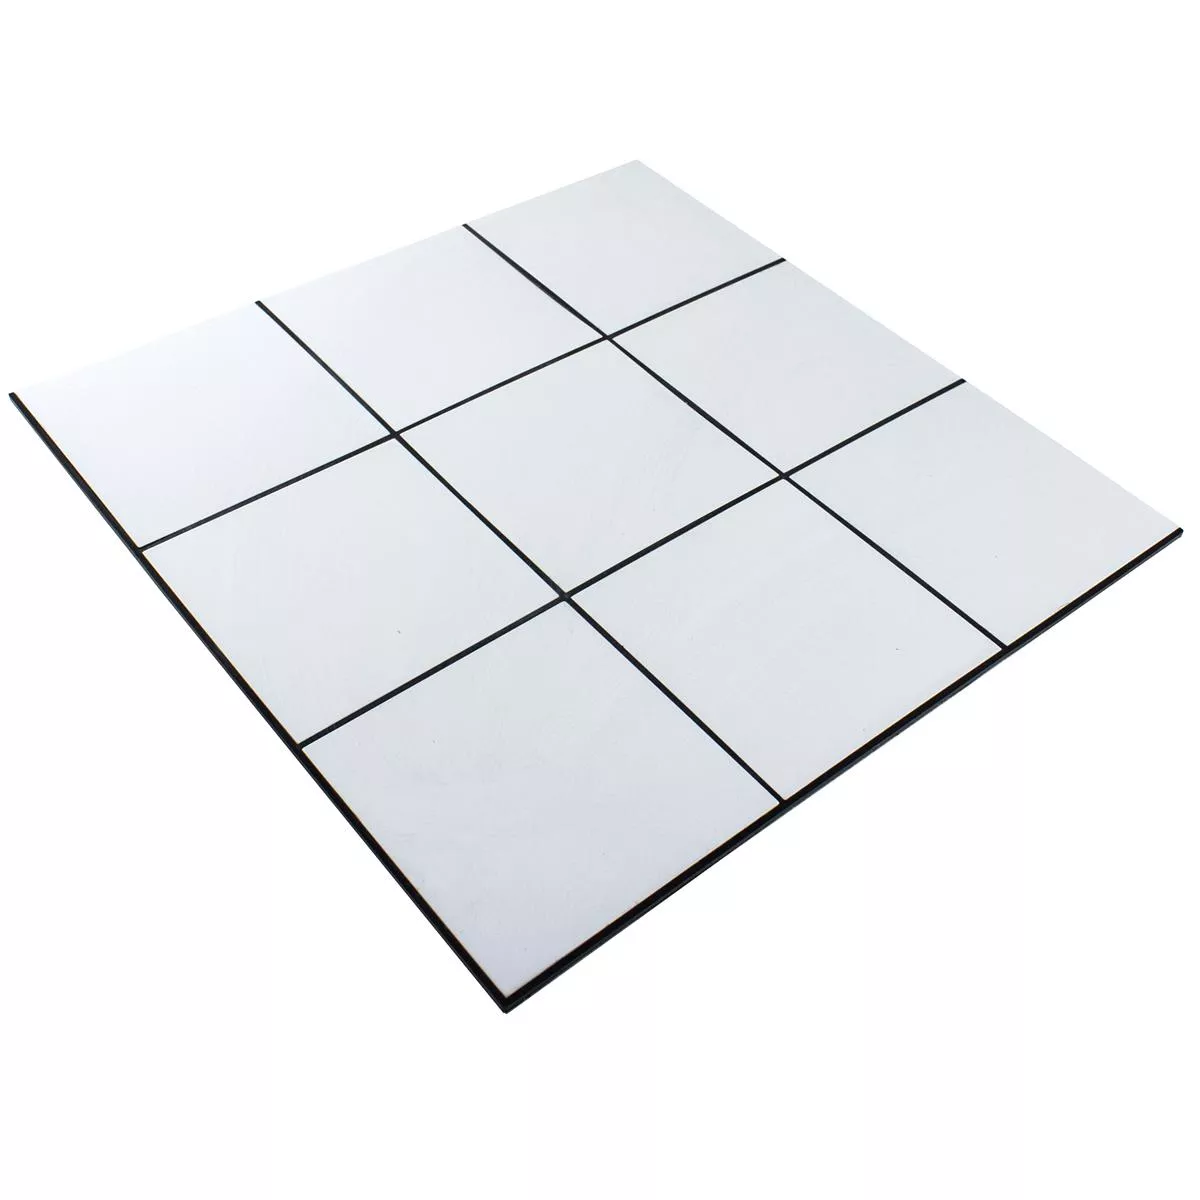 Aluminium Mozaika Lenora Samoprzylepny Biały